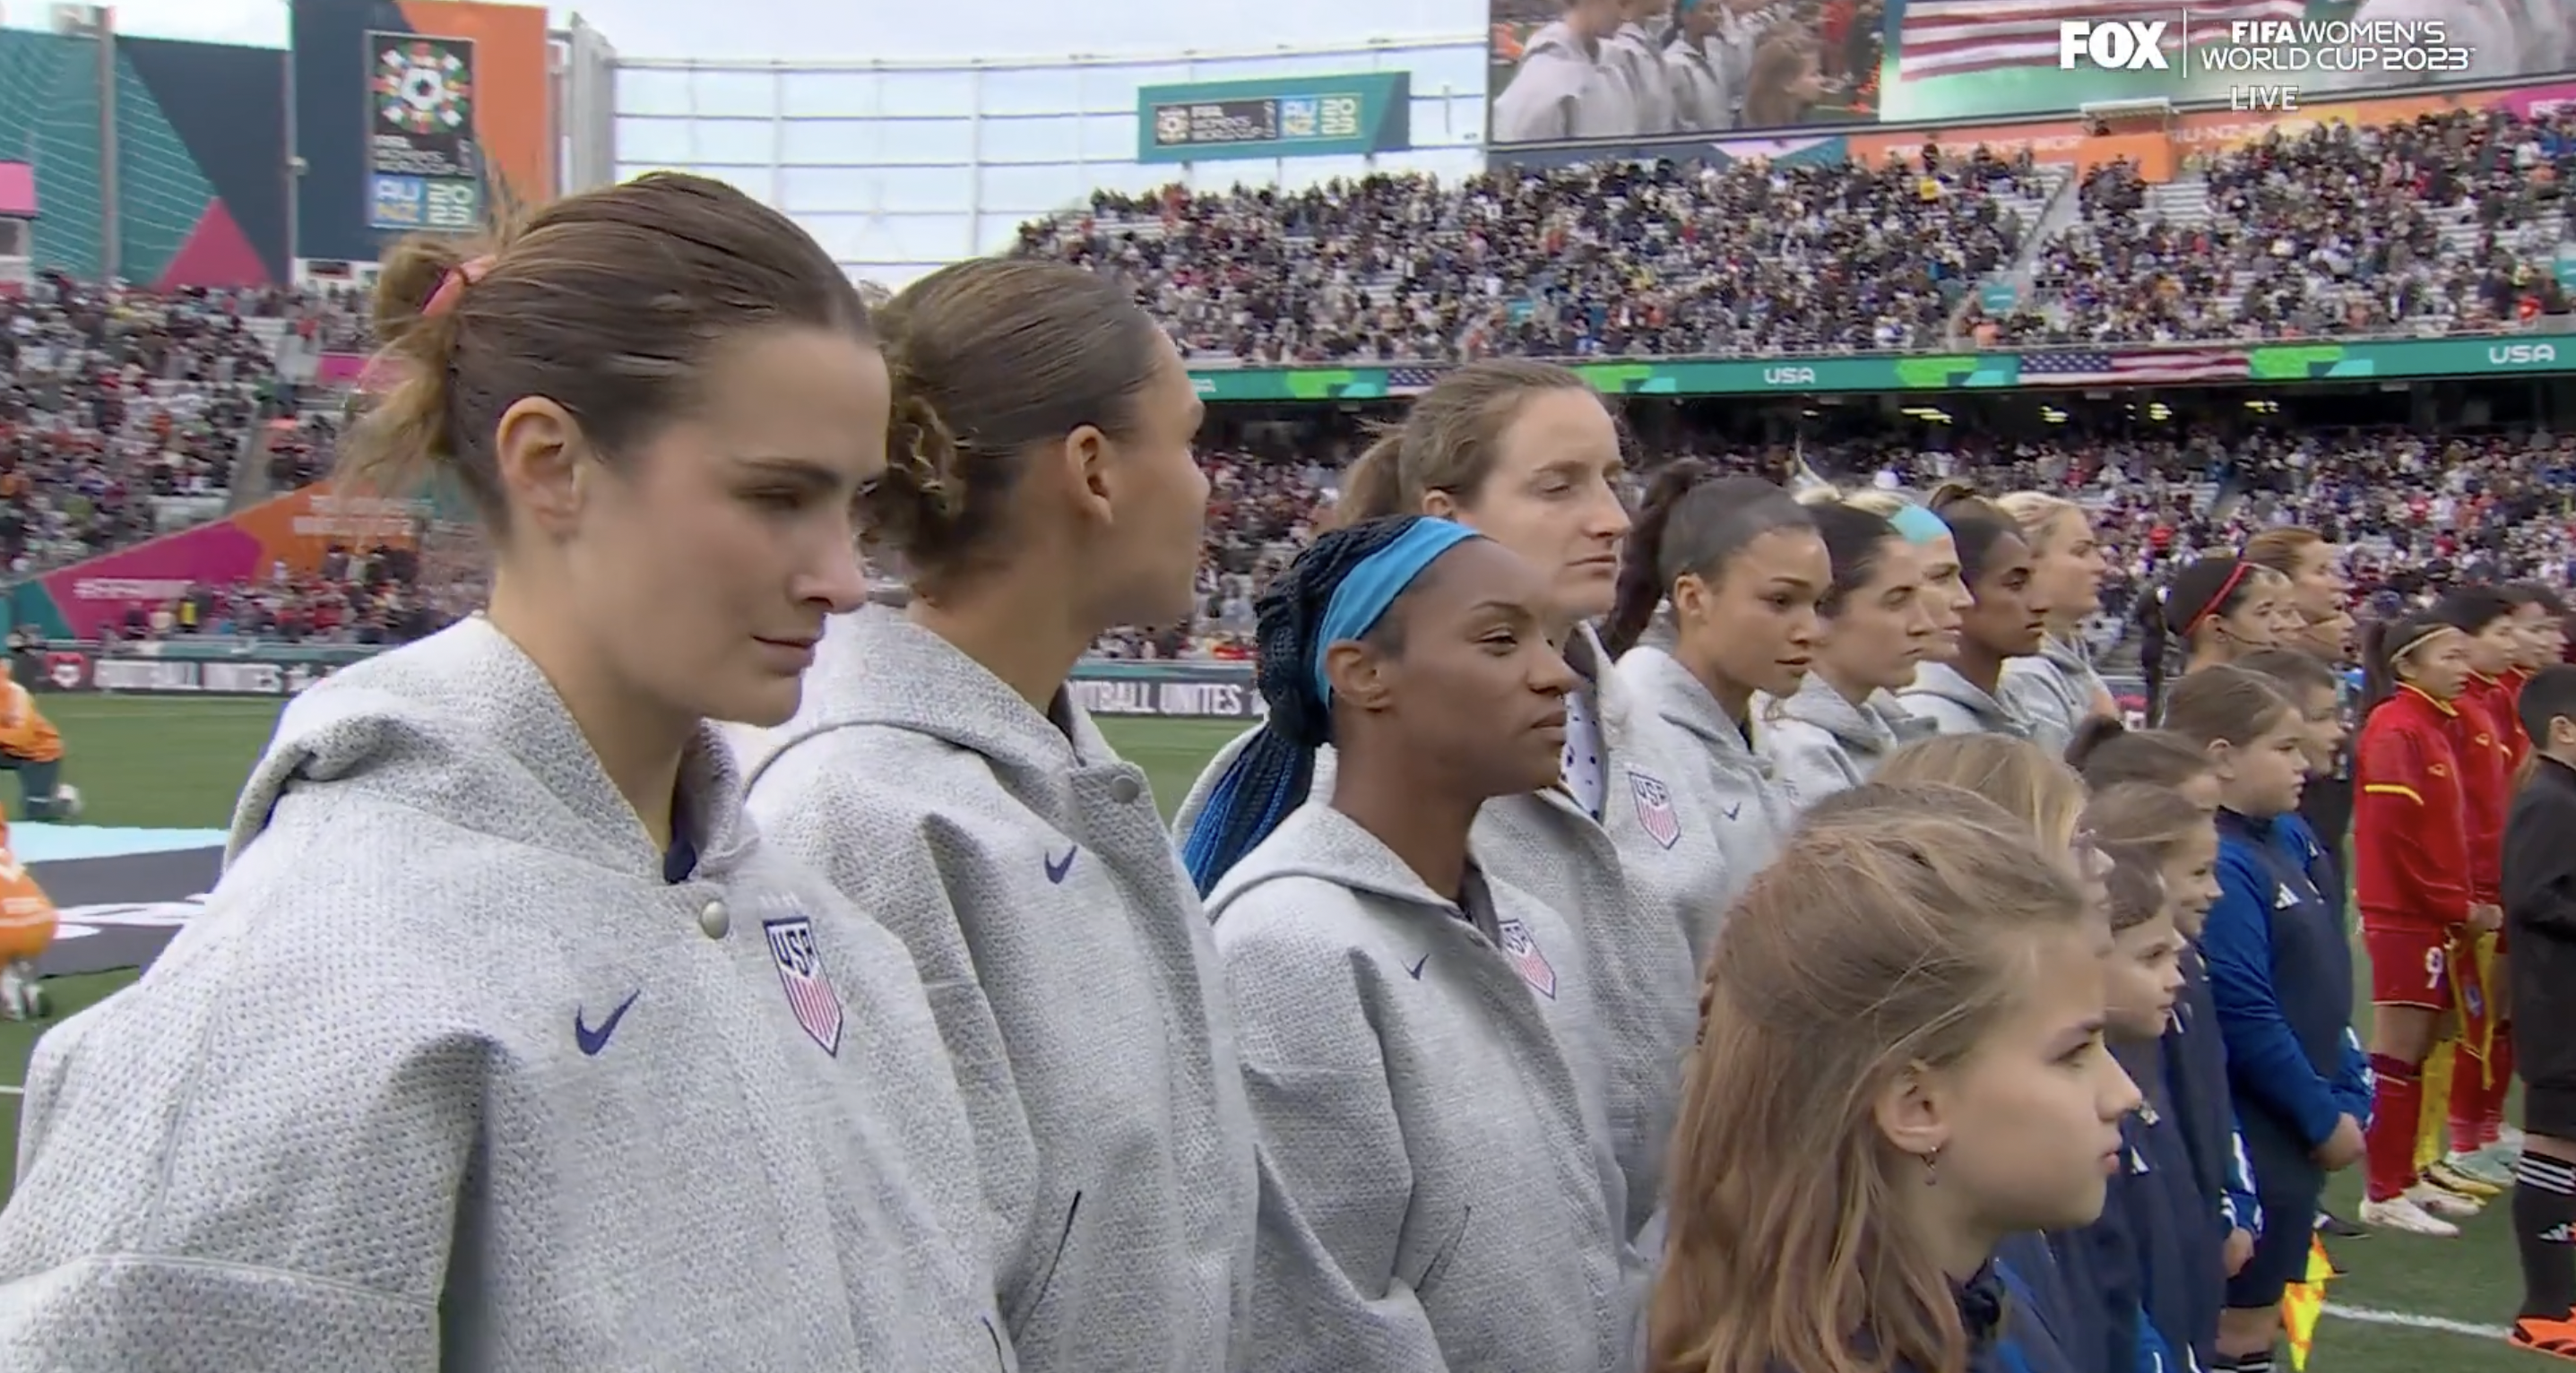 United States Women's Soccer Team